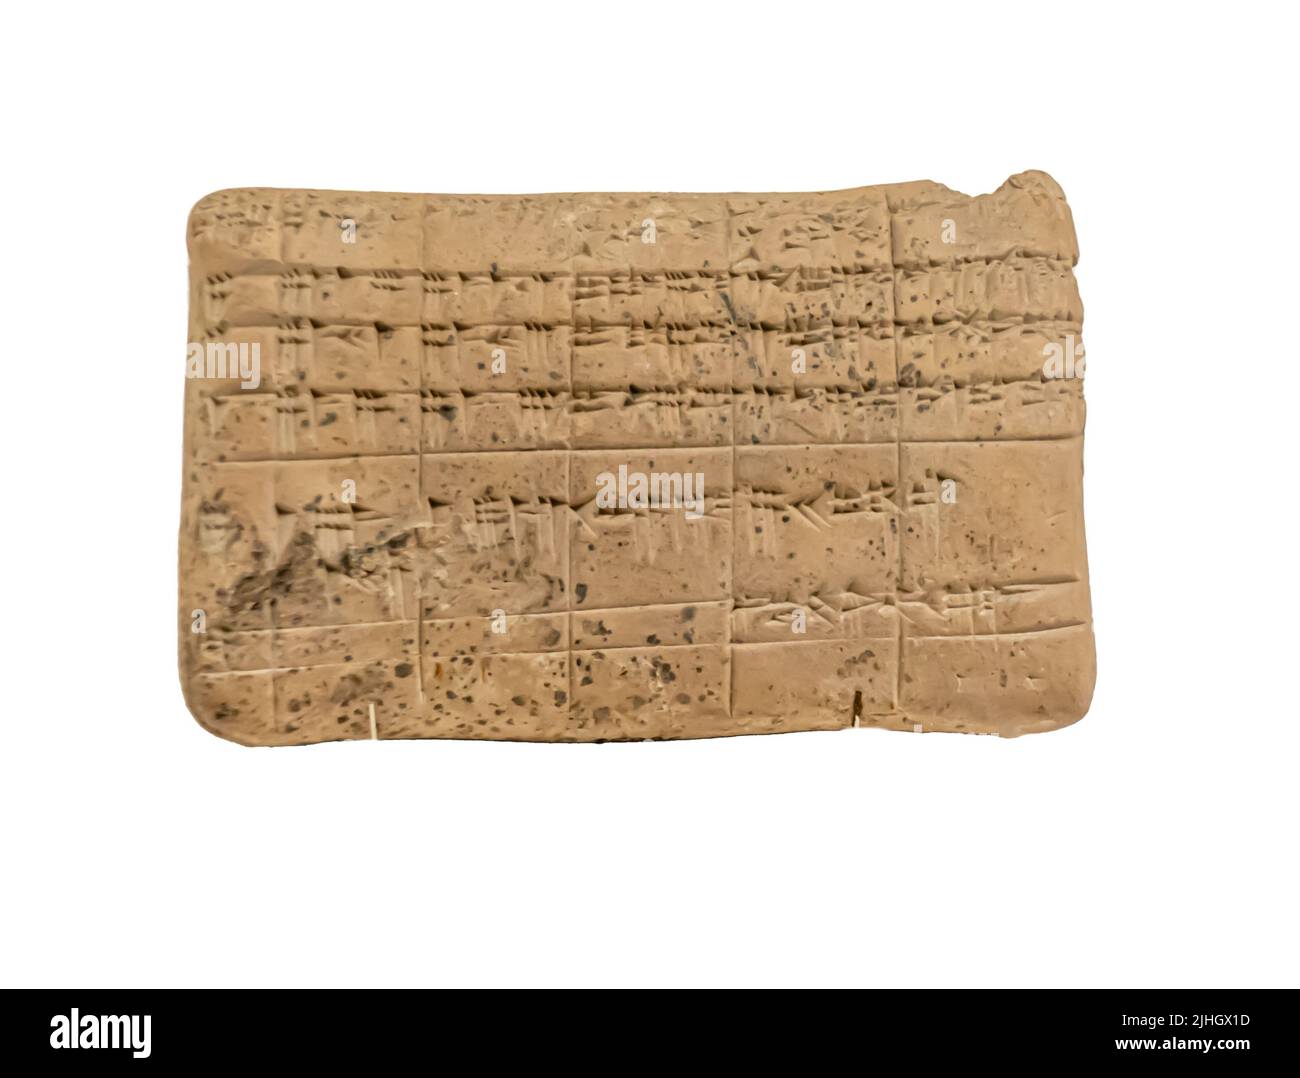 Documenti legali e amministrativi in lingua sumeriana e Akkadiana. Babylonia. Inizio del 2nd millenium a.C. Foto Stock